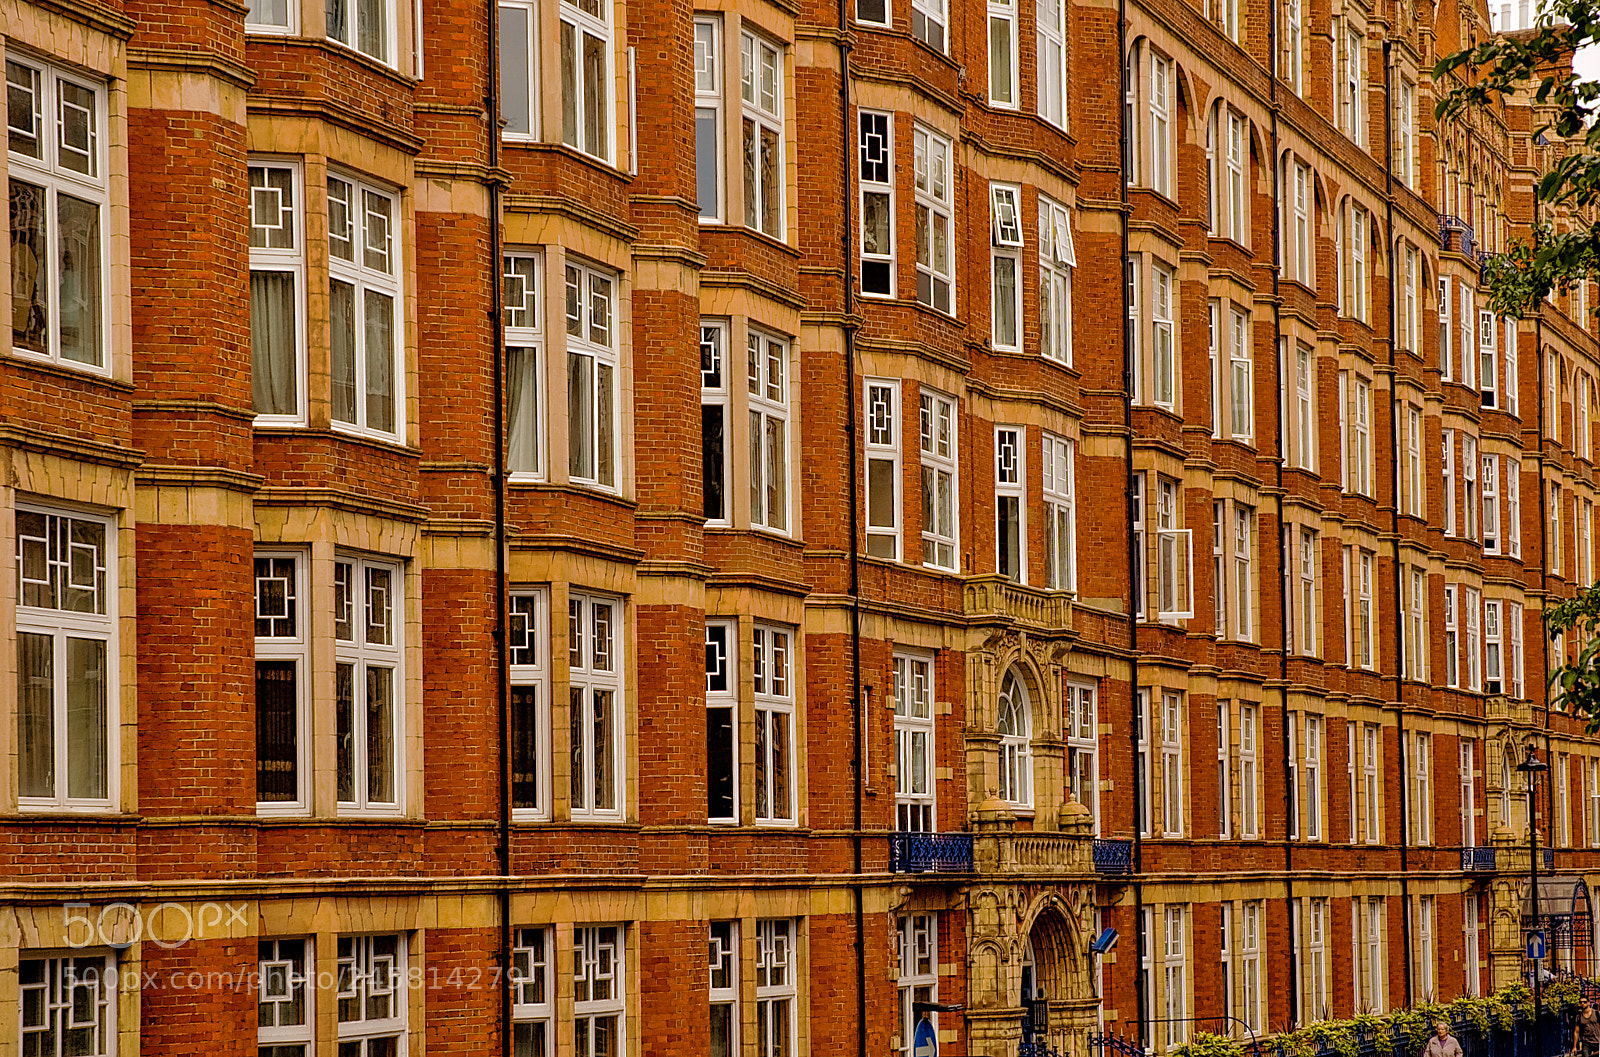 Nikon D70 sample photo. London facade photography